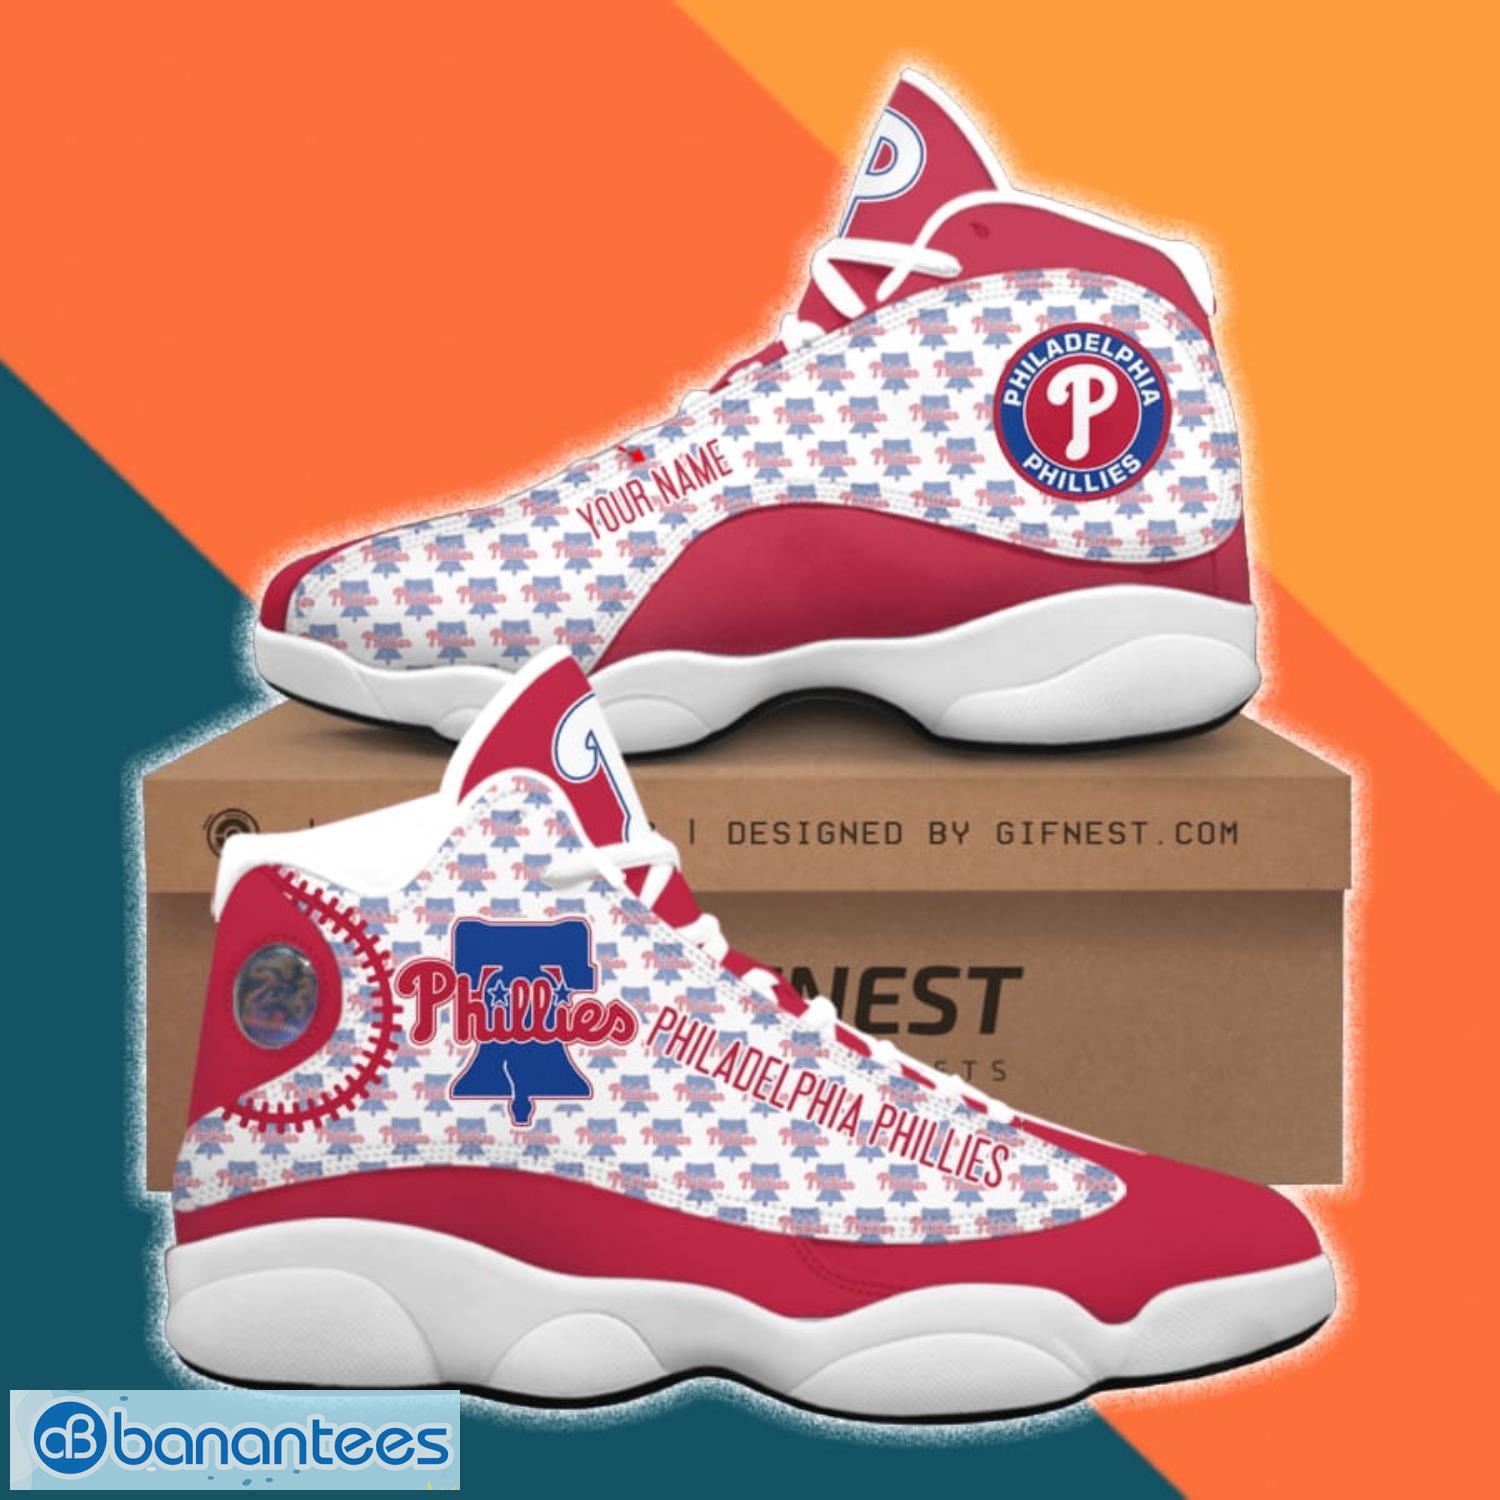 NBA Miami Heat Jordan Air Jordan 13 Custom Name Shoes - Freedomdesign